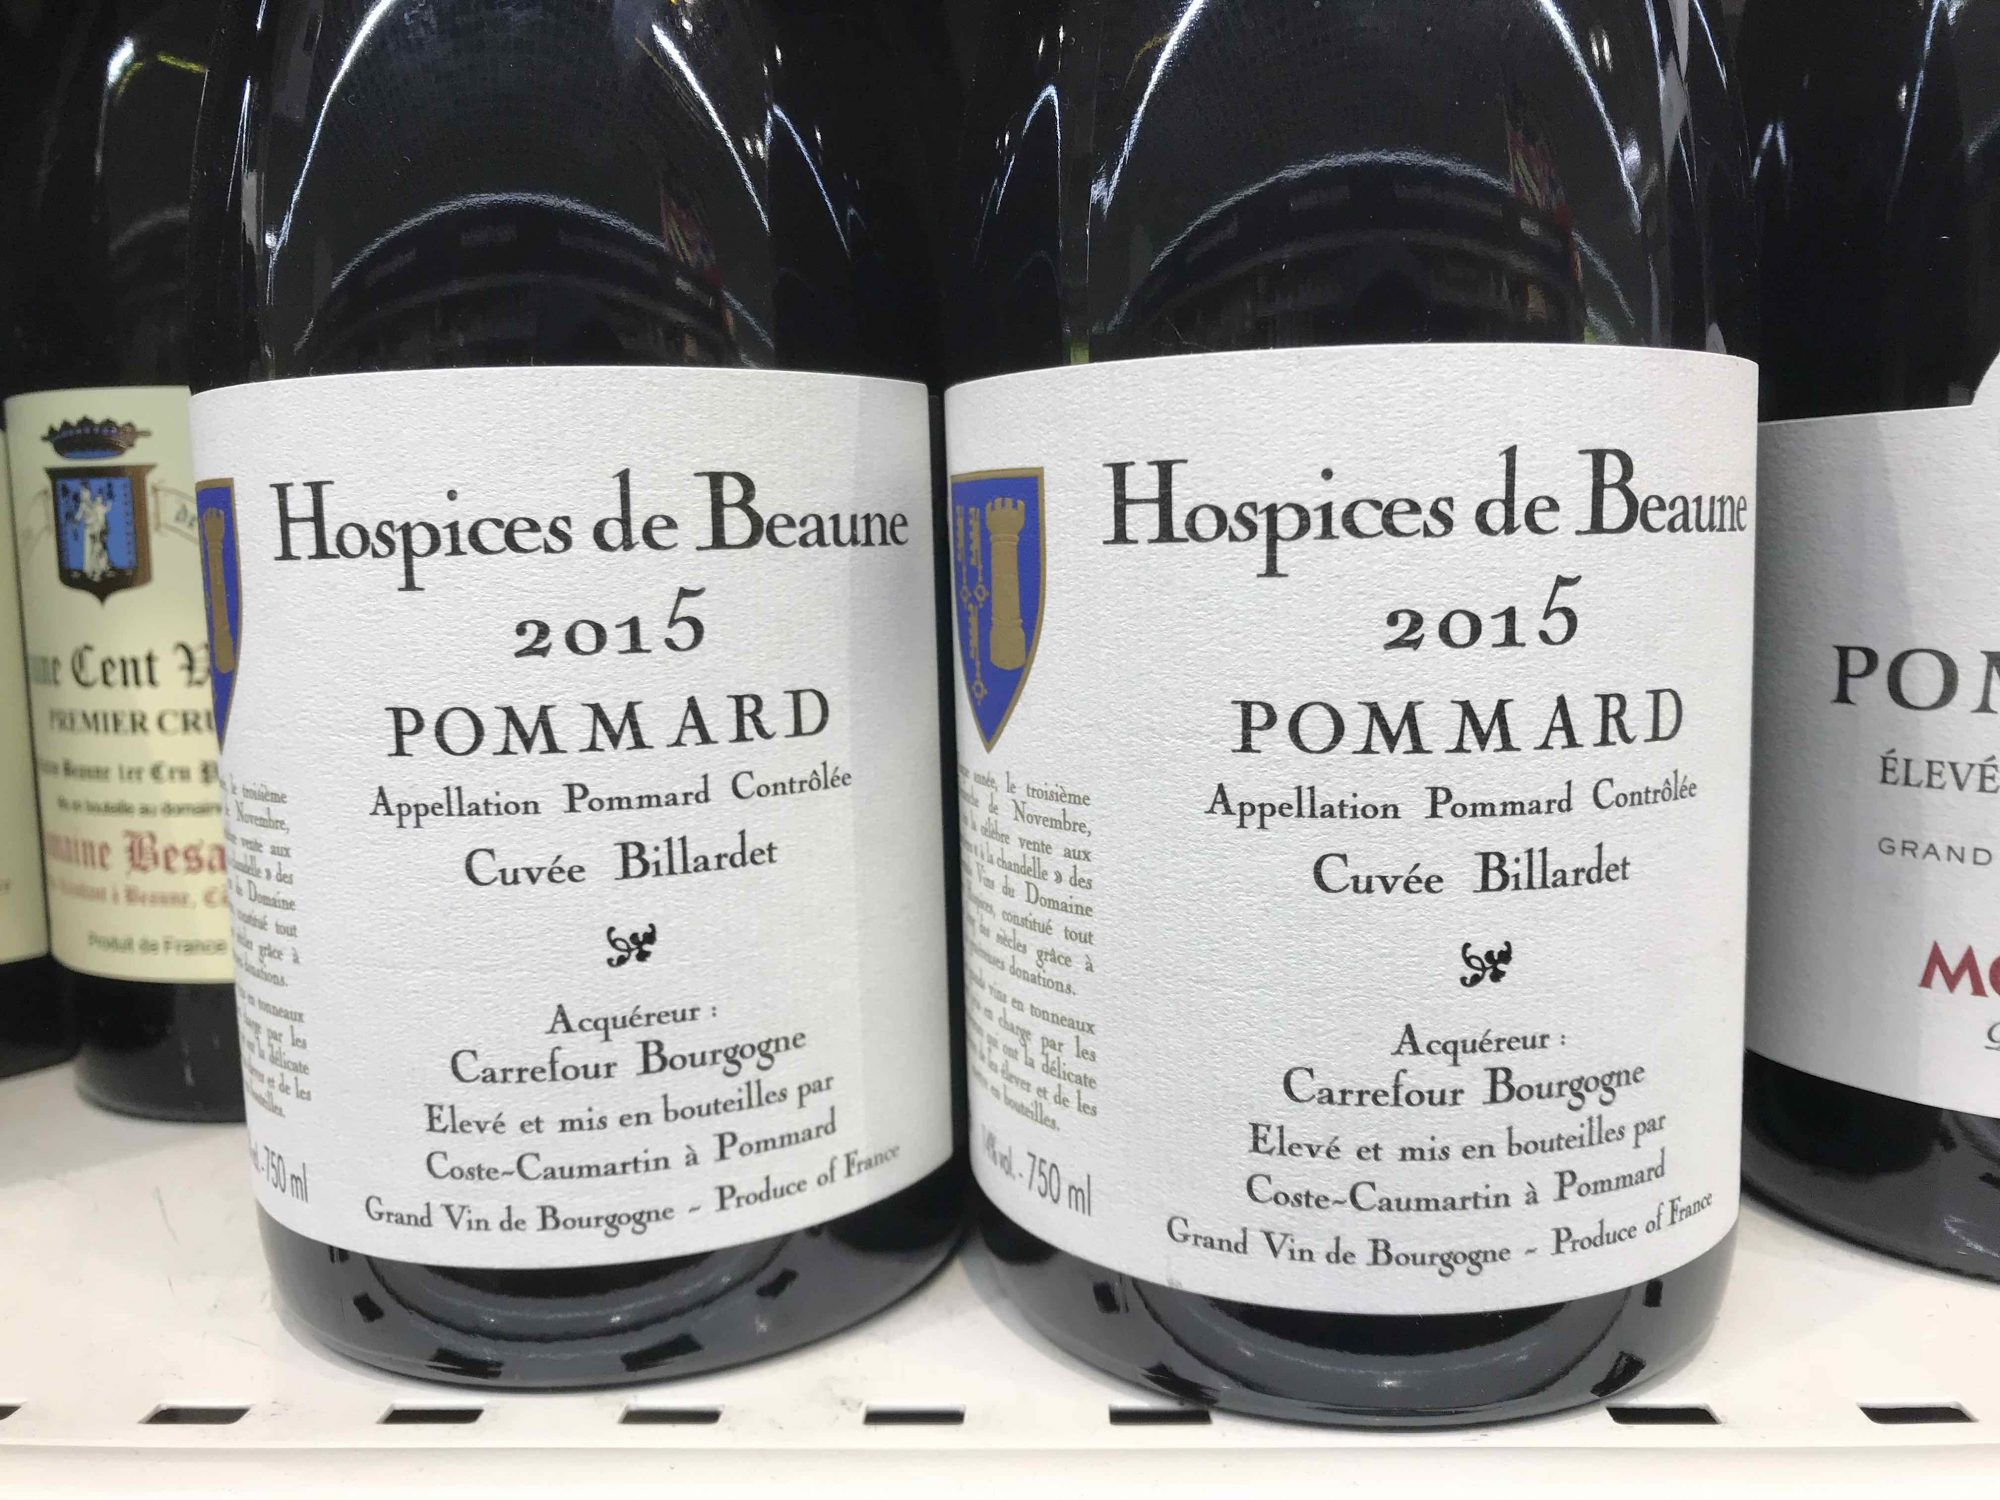 Hôtel Dieu Hospices de Beaune Wine Festival Auction